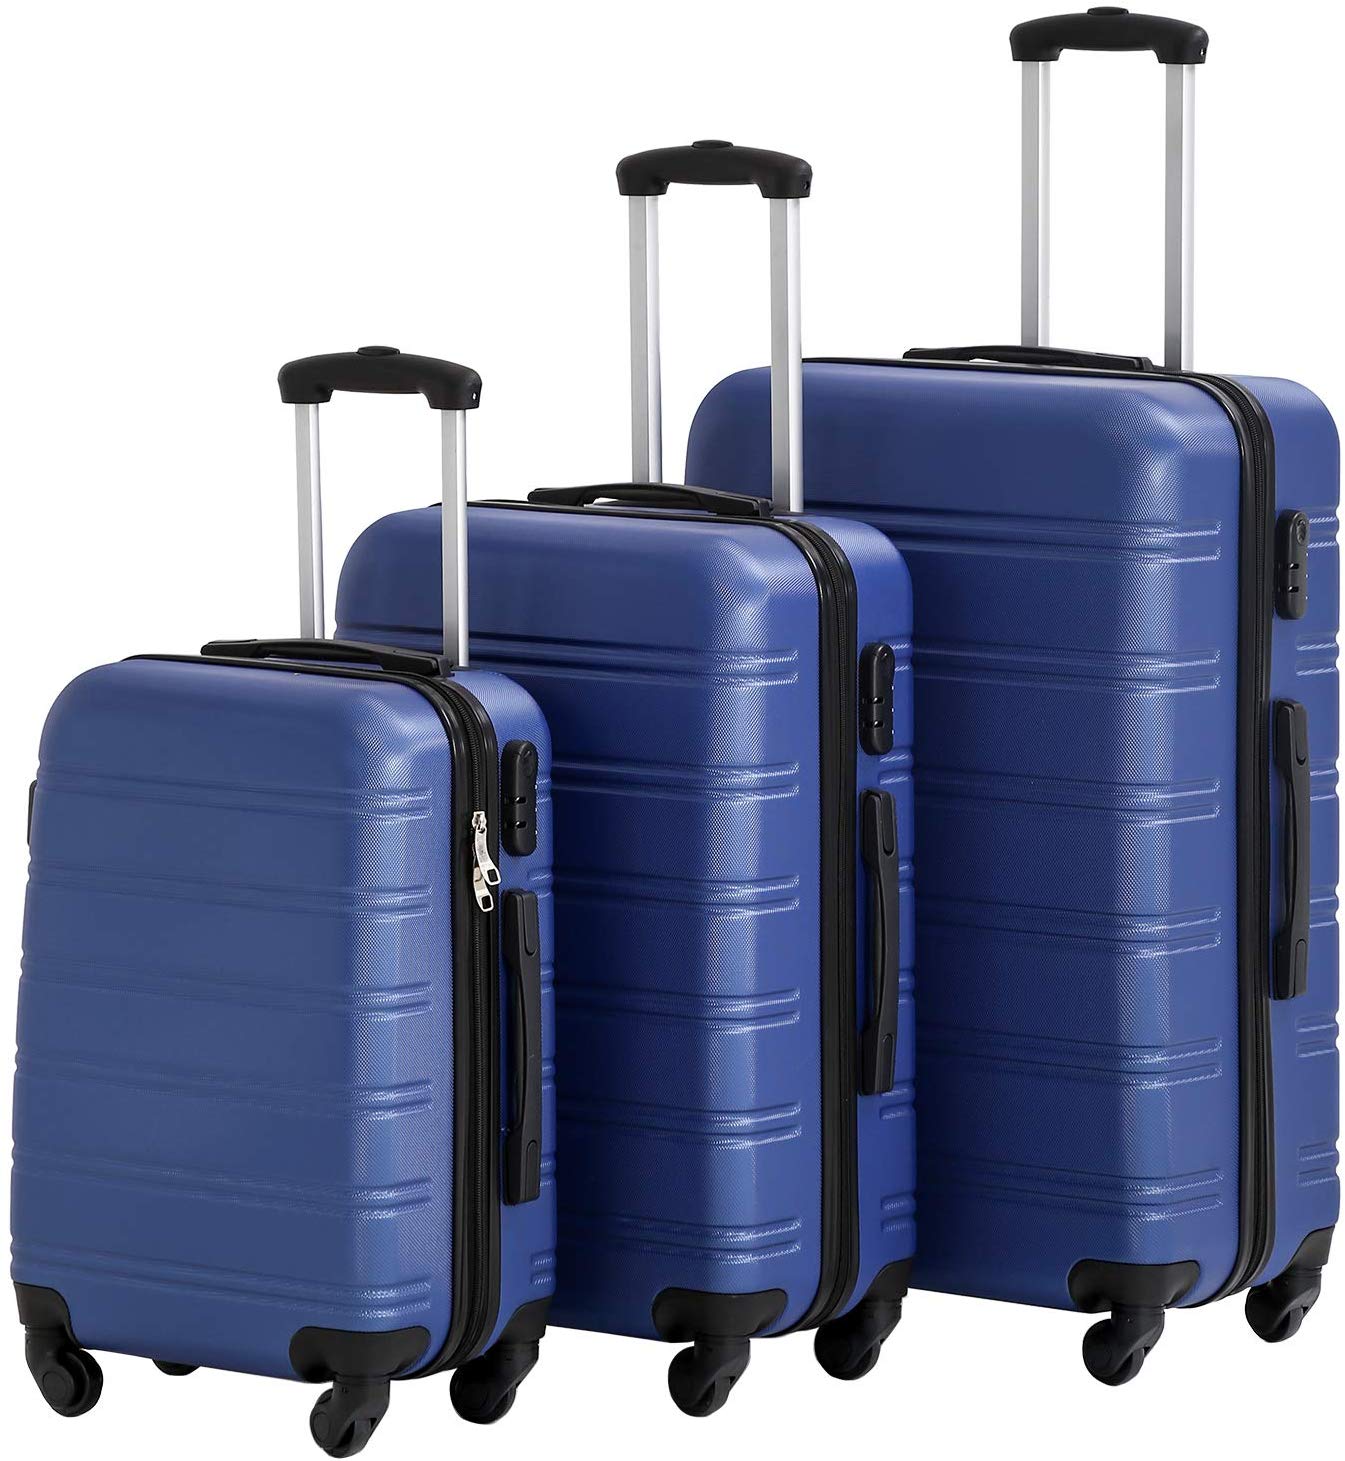 Luggage&Travel